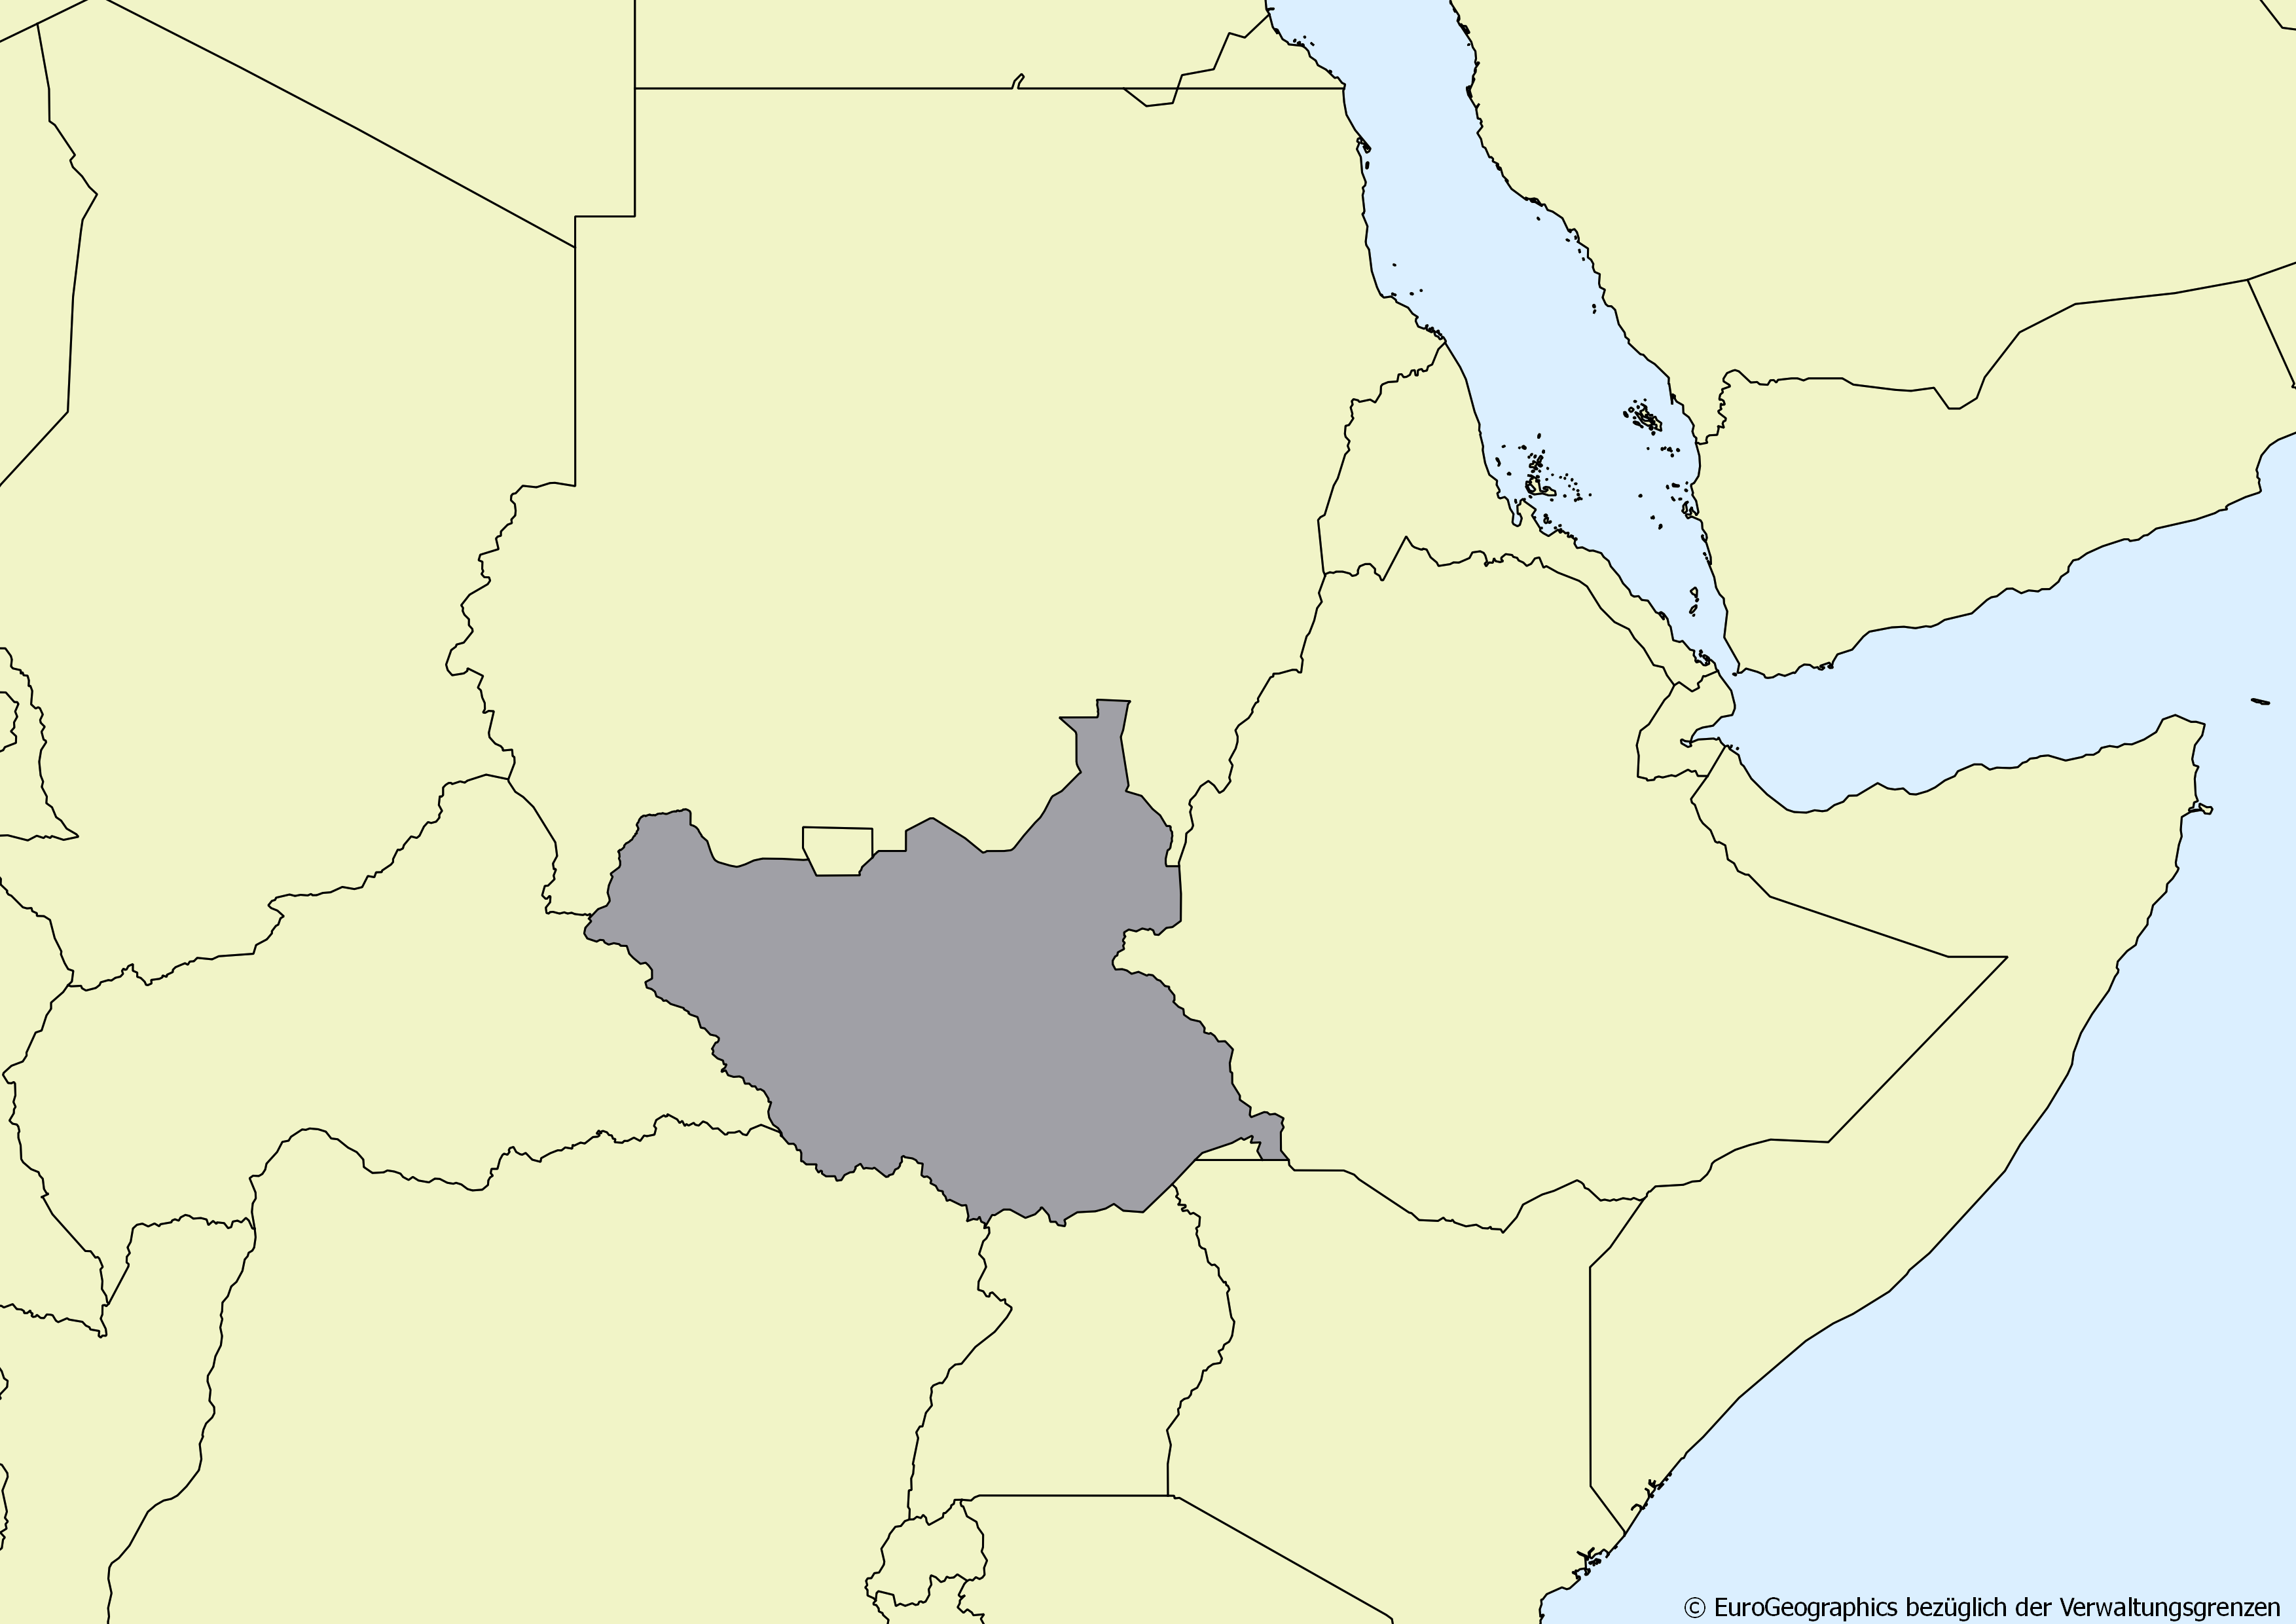 Ausschnitt einer Karte des afrikanischen Kontinents mit Ländergrenzen. Im Zentrum steht Südsudan grau hervorgehoben